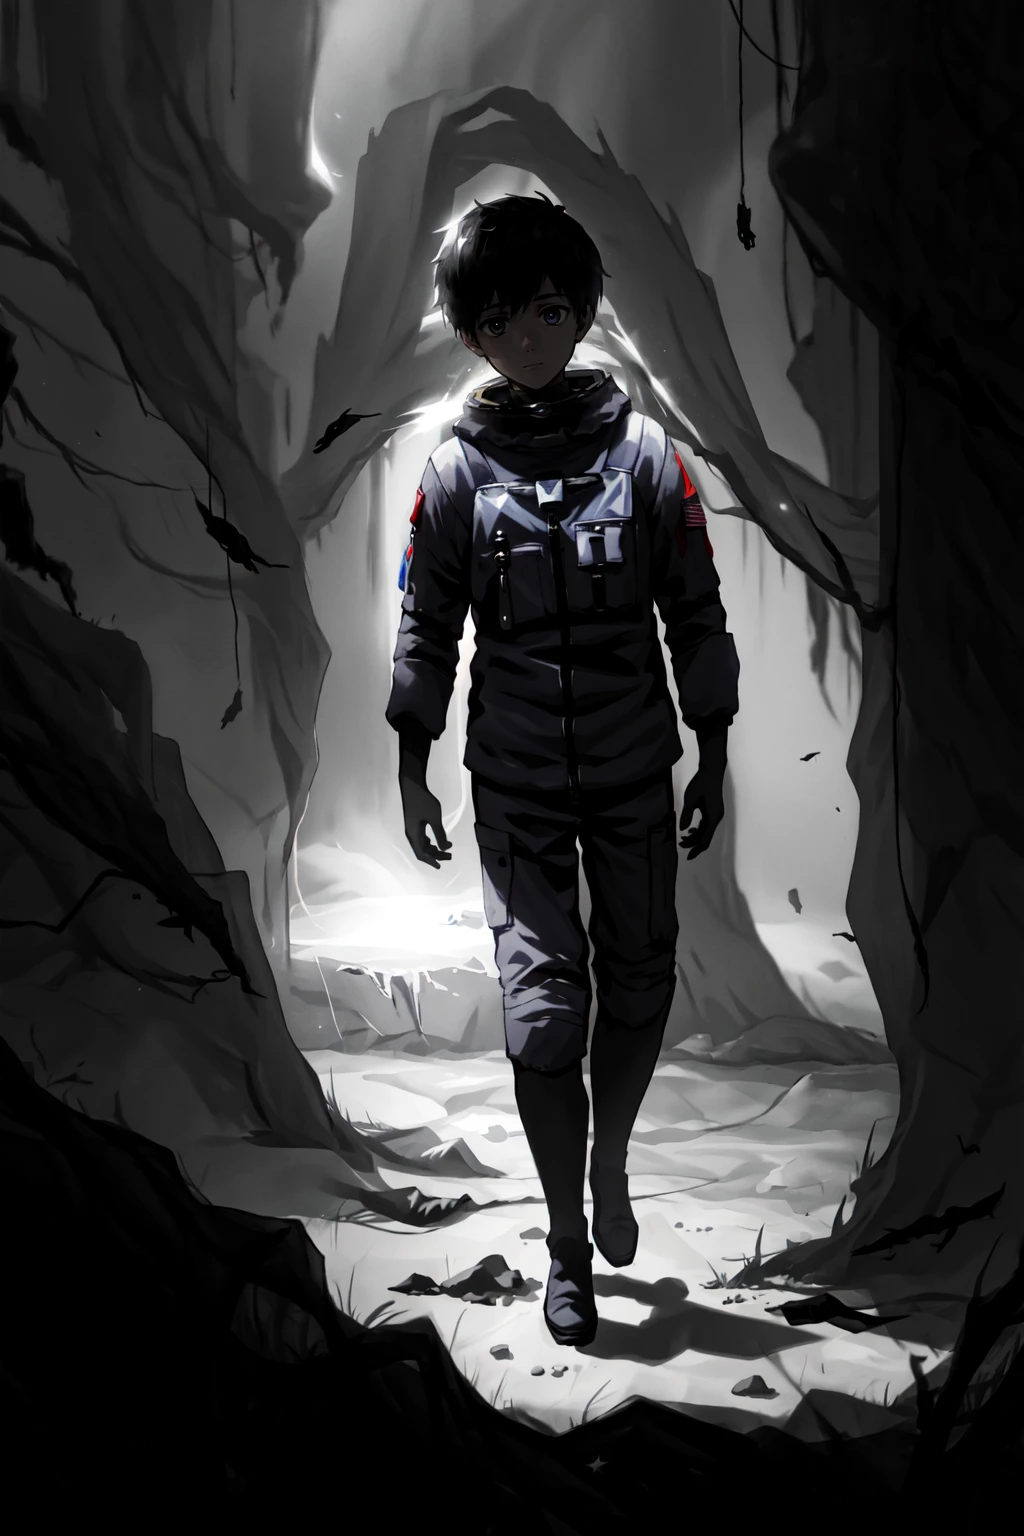 стиль лимко, 1 мальчик, мужской фокус, космонавт на Луне, депрессивные черты, Пограничное пространство ужасов, экстремальный свет и тень